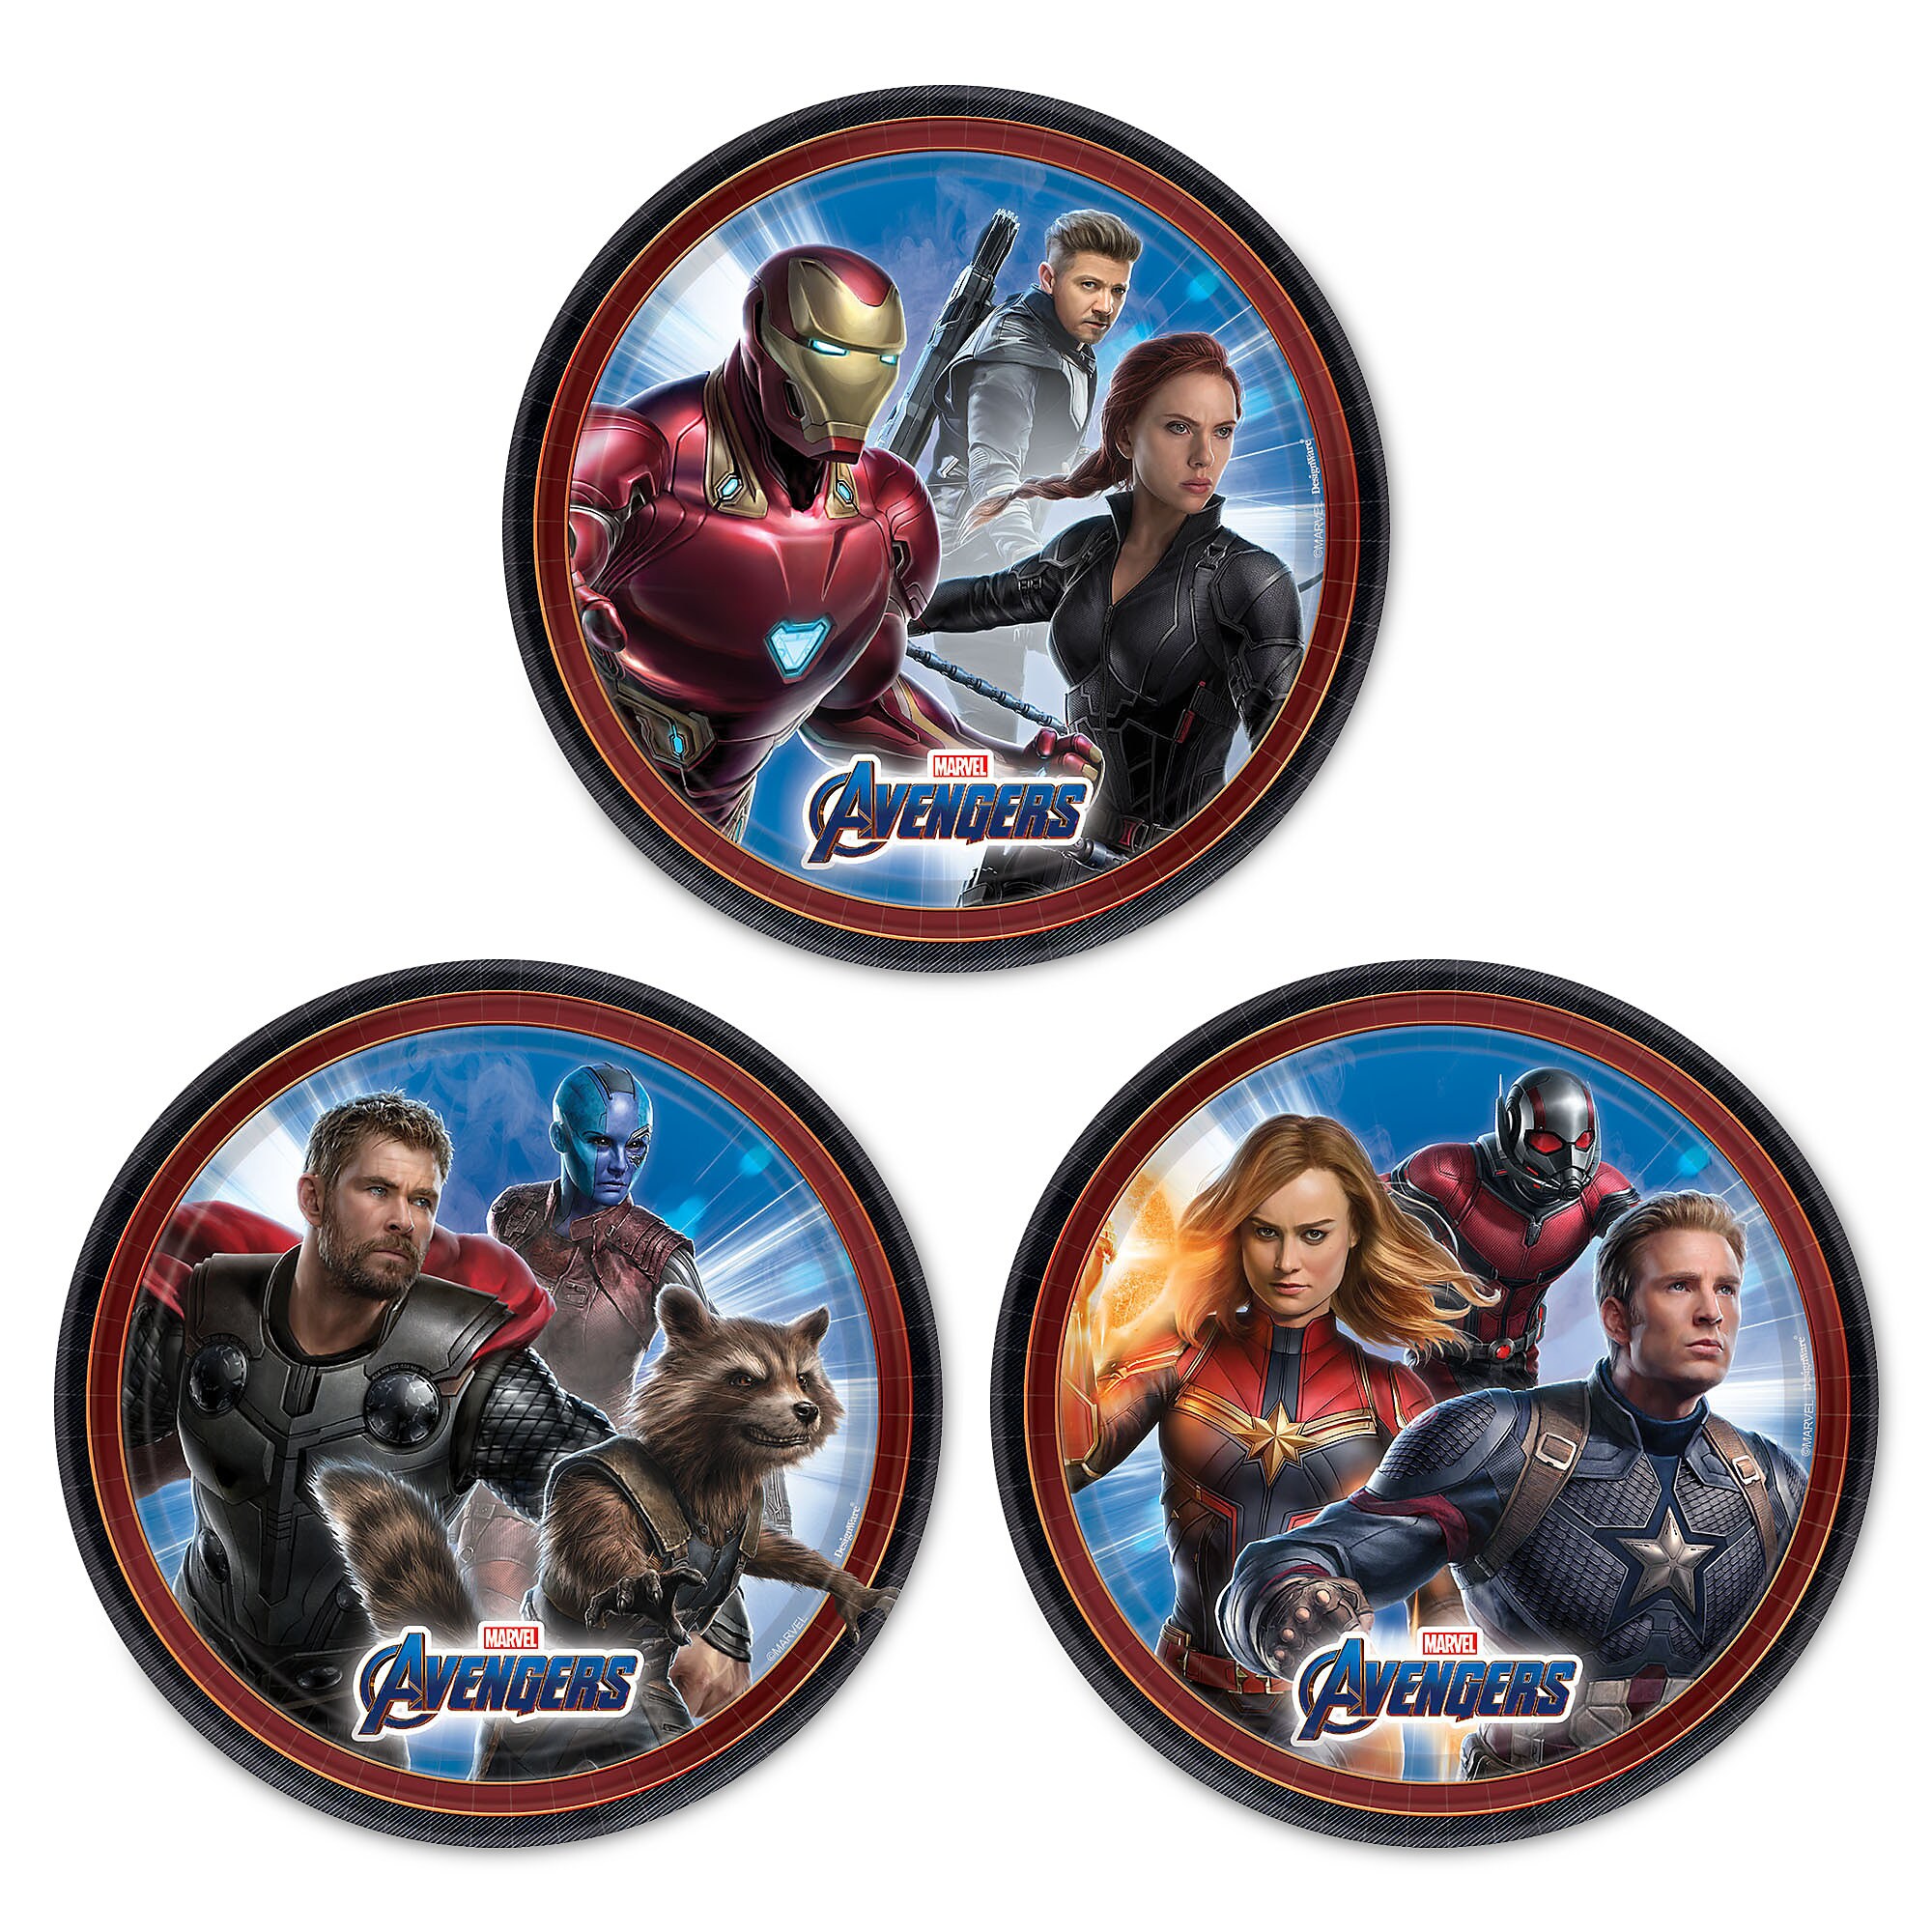 Marvel's Avengers: Endgame Dessert Plates